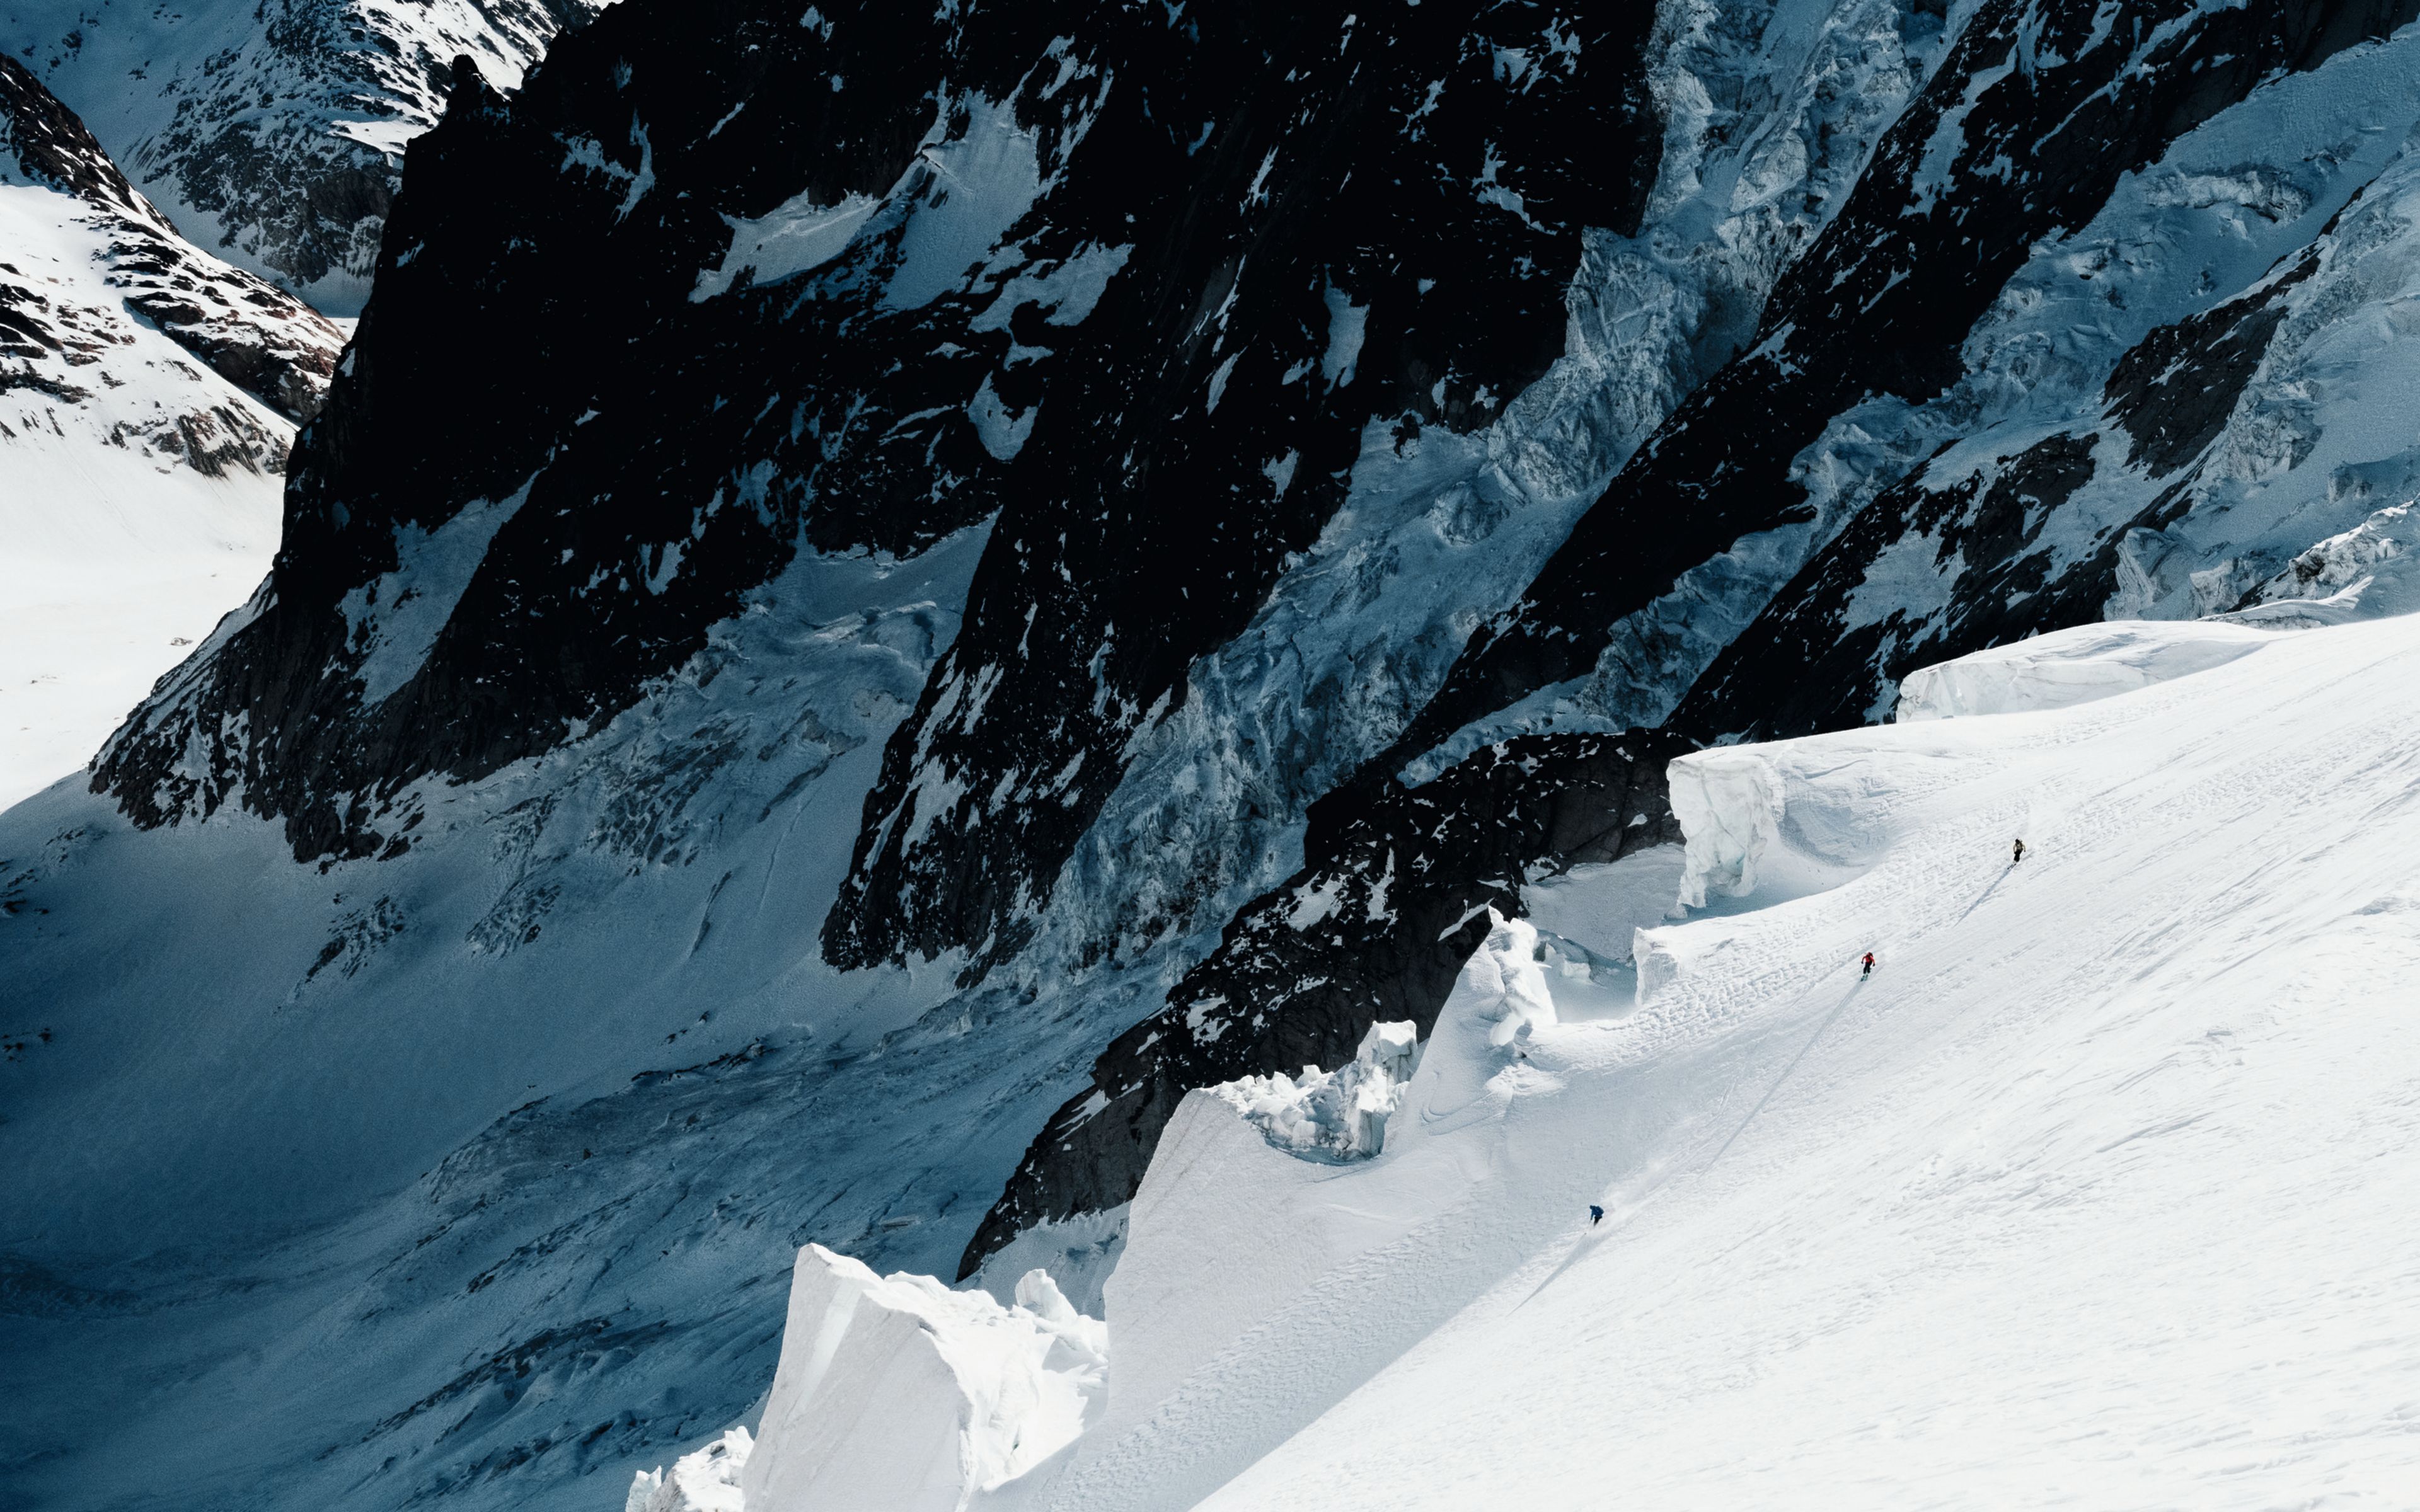 Les skieurs dévalent les pentes d'un glacier dans le Lötschental.